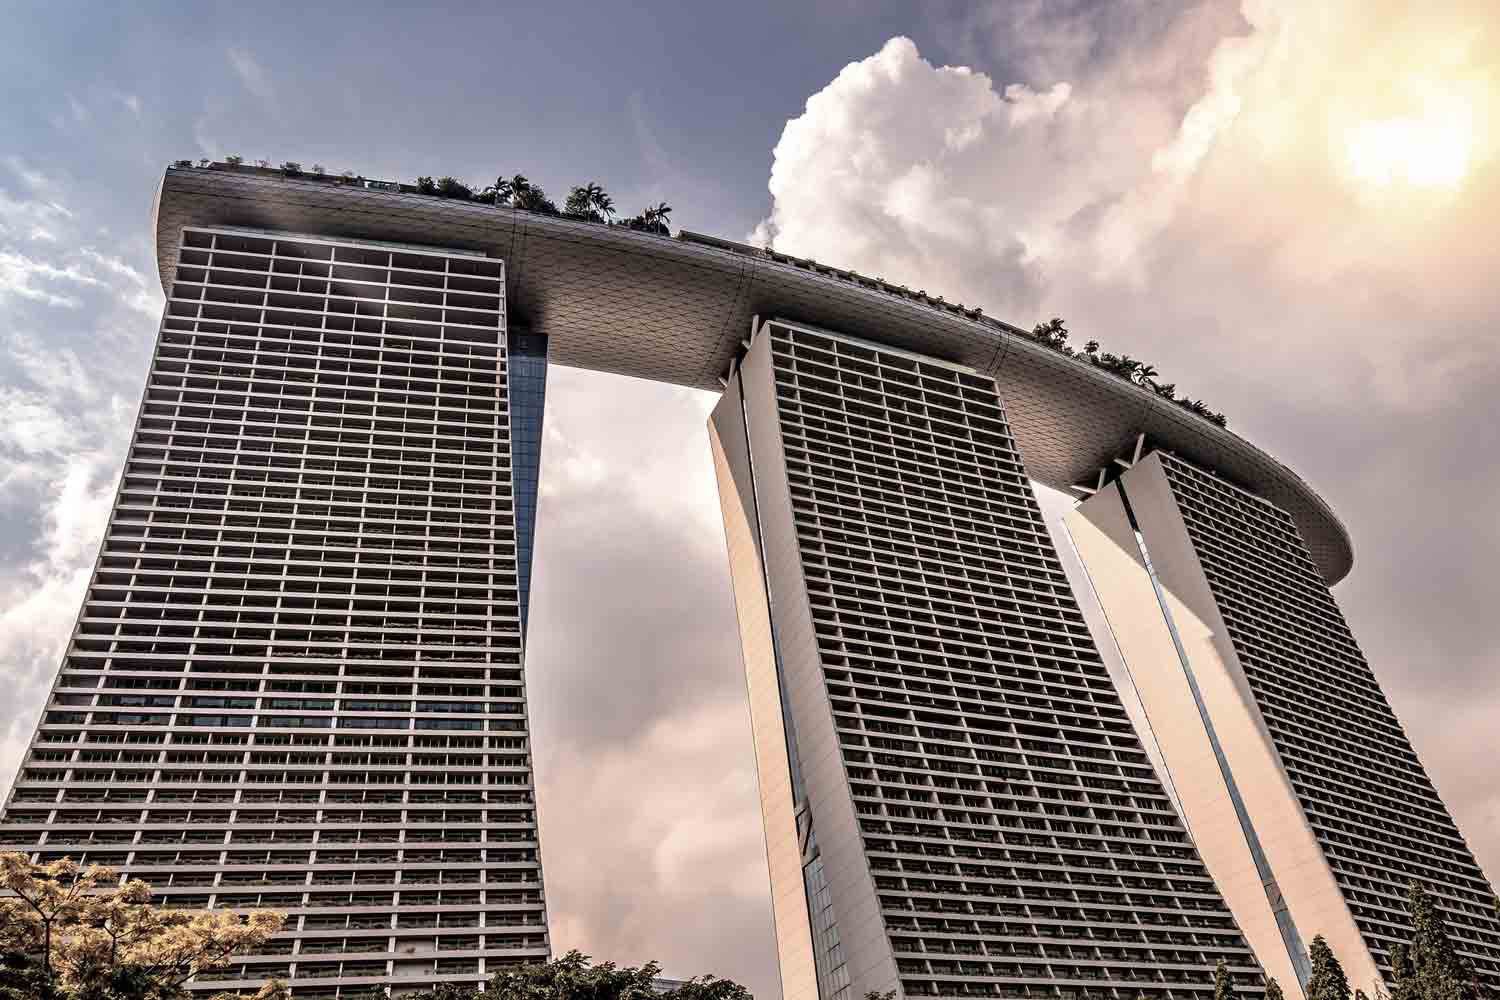 Singapur Sehenswürdigkeiten - 10 Dinge, die du machen solltest! #singapur #sightseeing #sehenswürdigkeiten #südostasien #highlights #tipps #topthingstodo